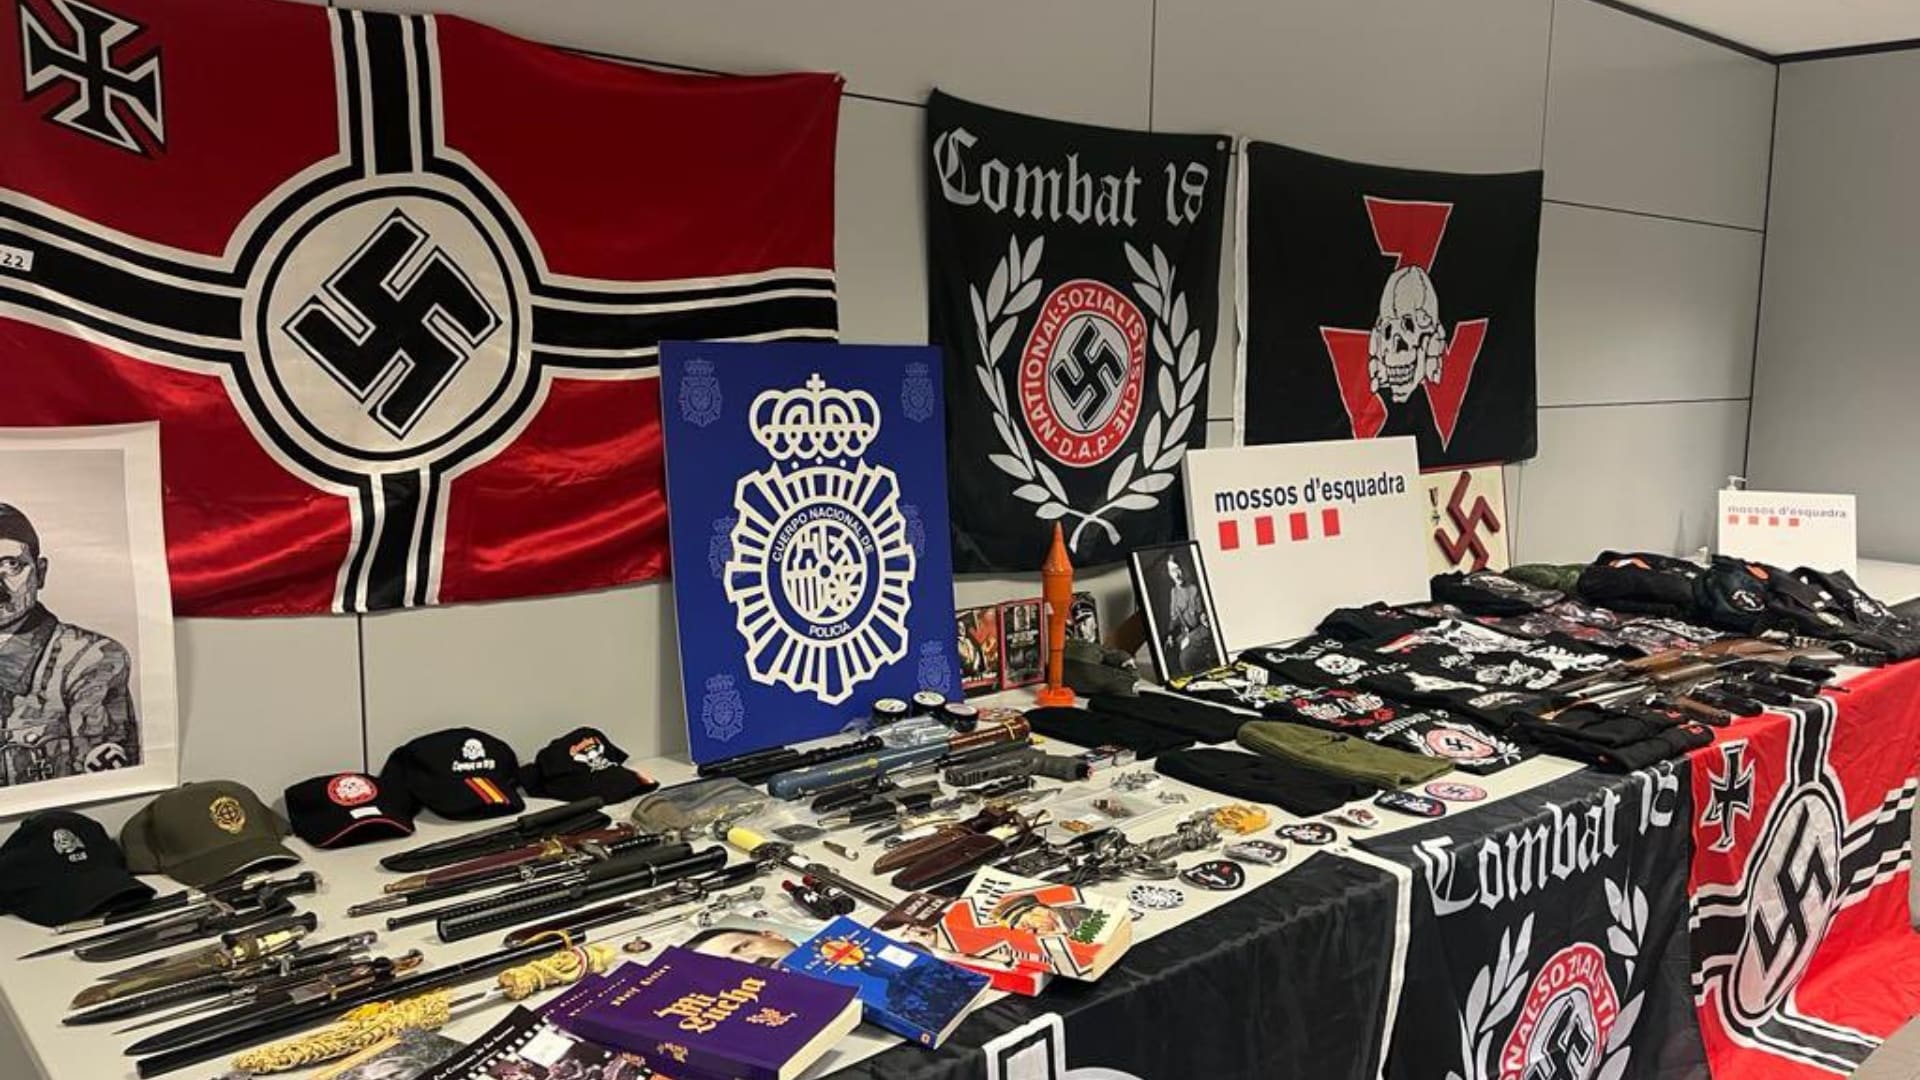 El material incautado en la operación contra el grupo neonazi Combat 18 | POLICÍA NACIONAL